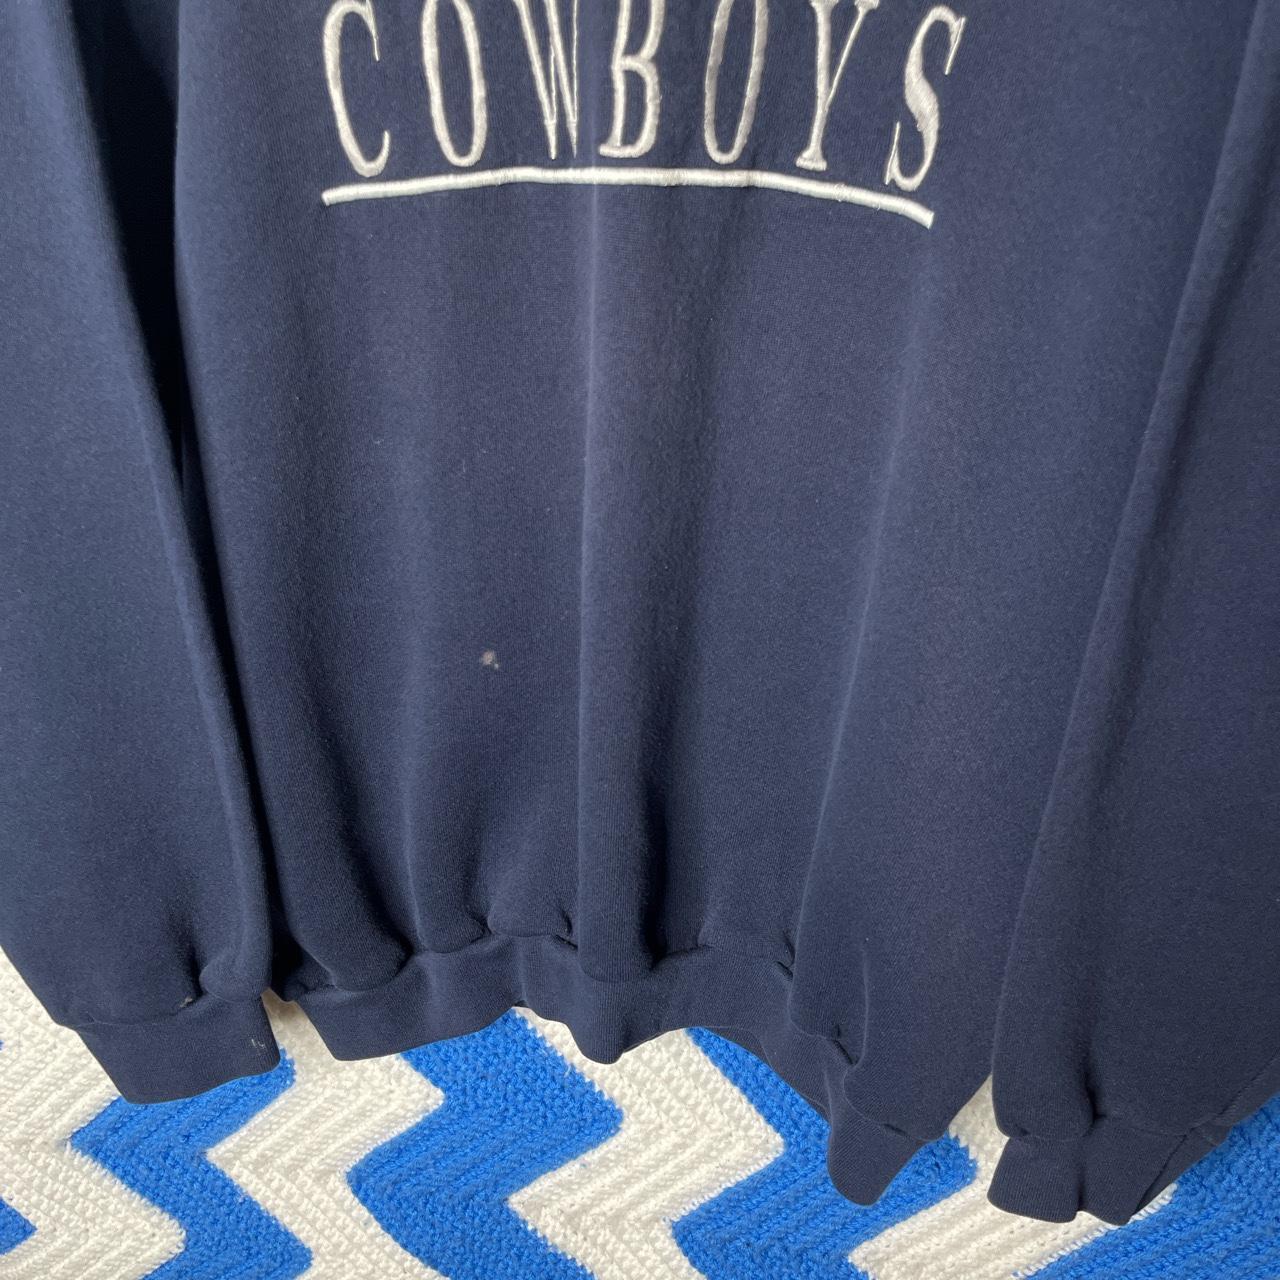 Vintage 90s Dallas Cowboys embroidered crewneck... - Depop